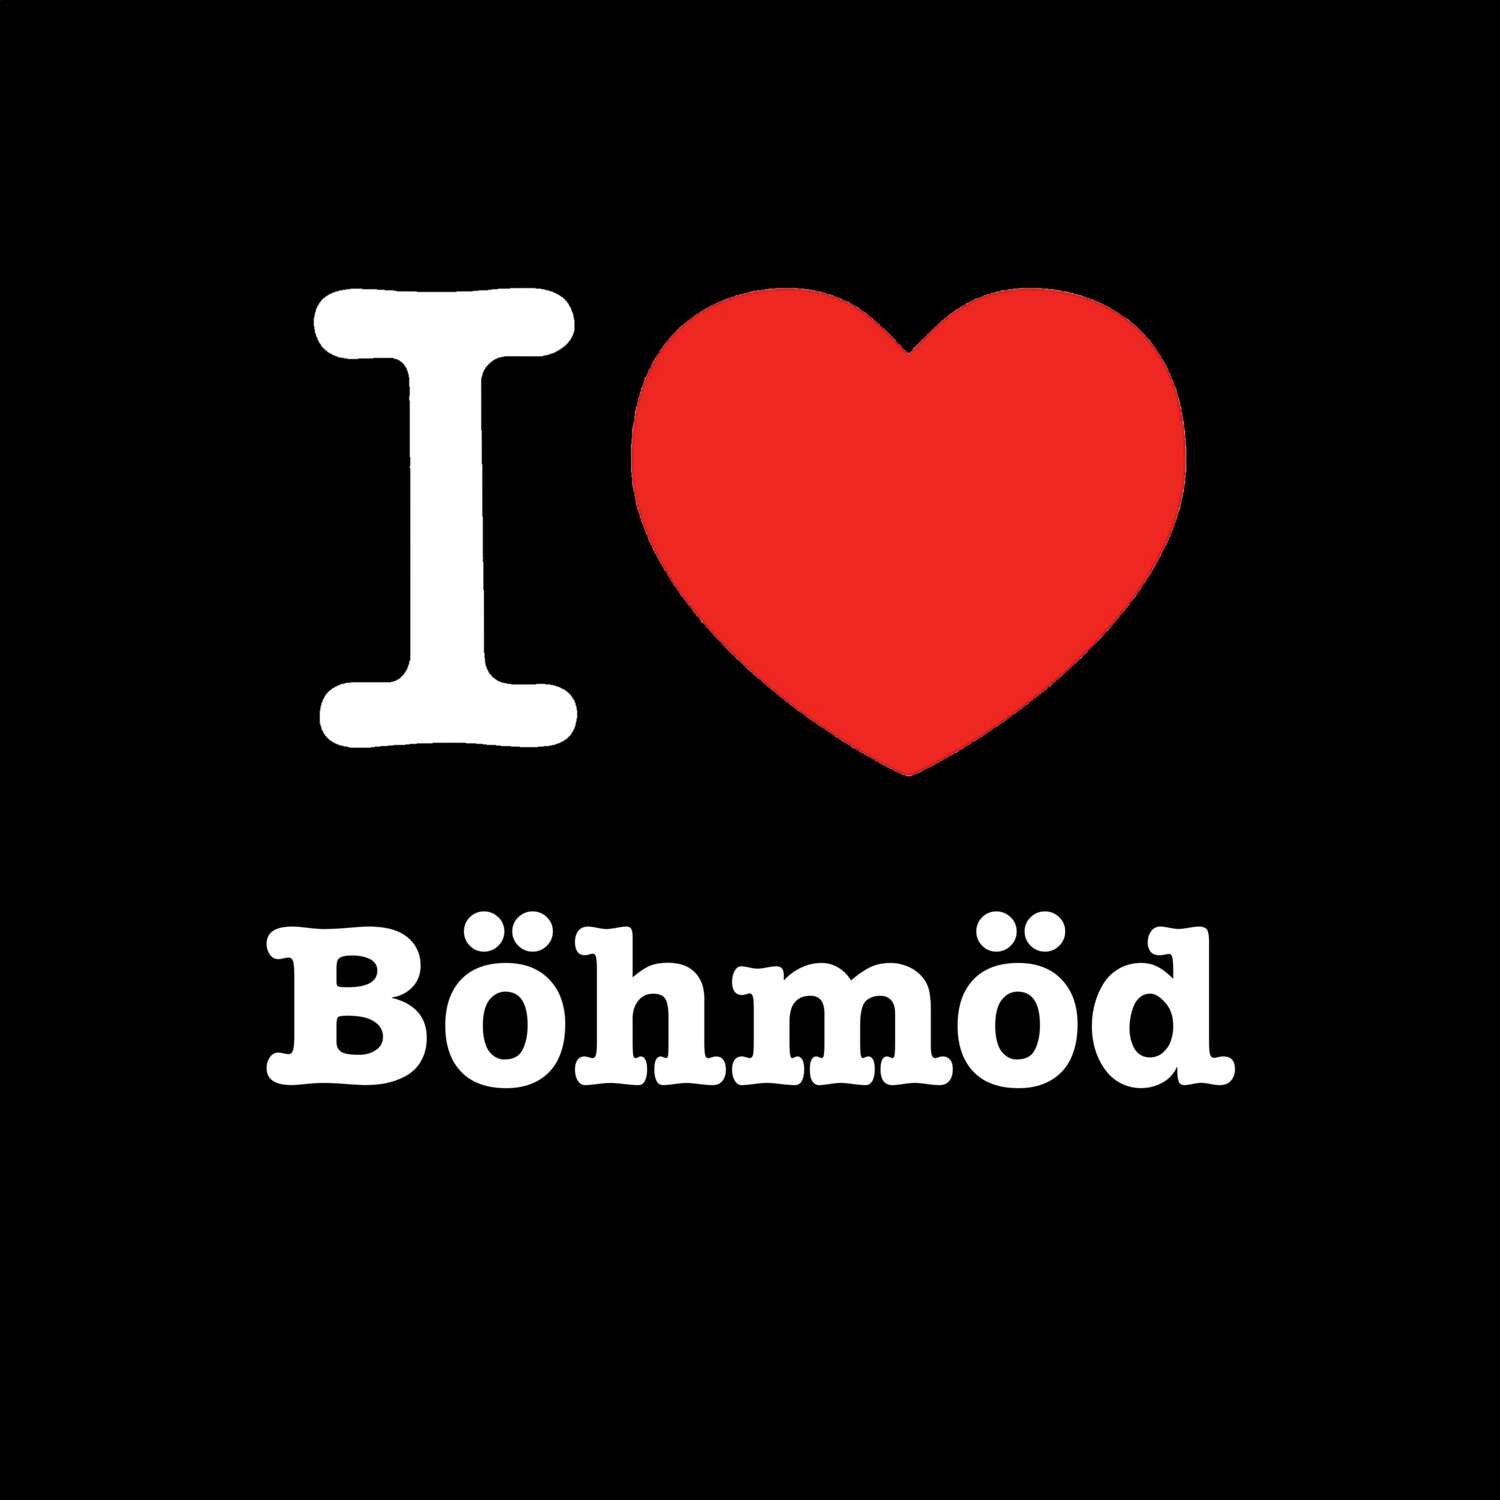 Böhmöd T-Shirt »I love«